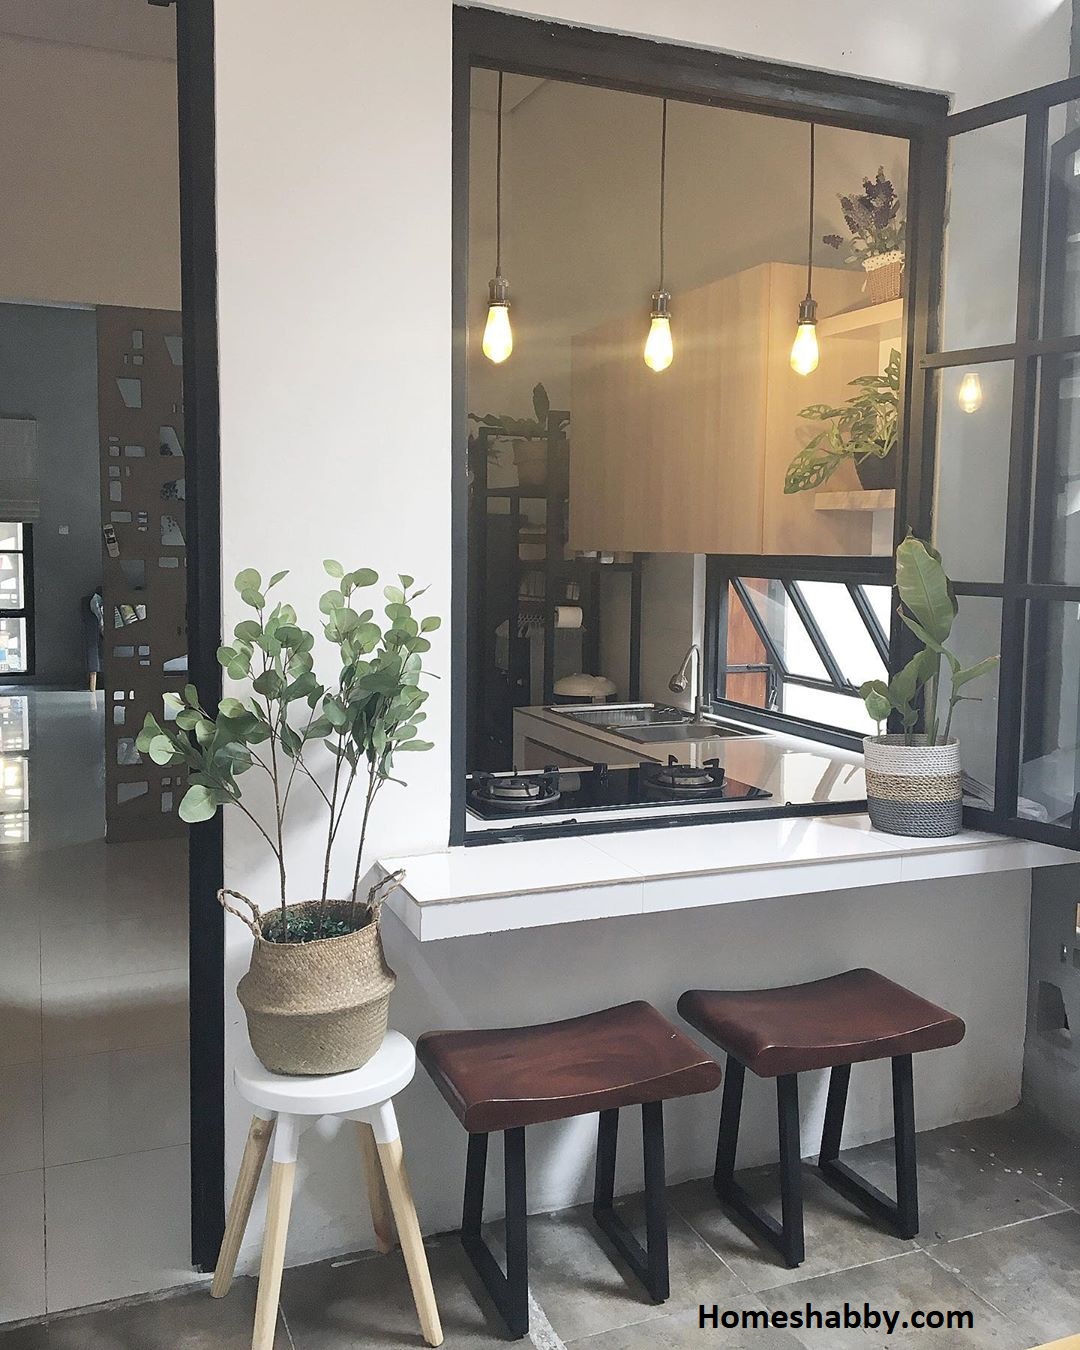 Ide Inspirasi Mini Bar Minimalis Untuk Dapur Kecil Tampil Lebih Keren Seperti Cafe Homeshabbycom Design Home Plans